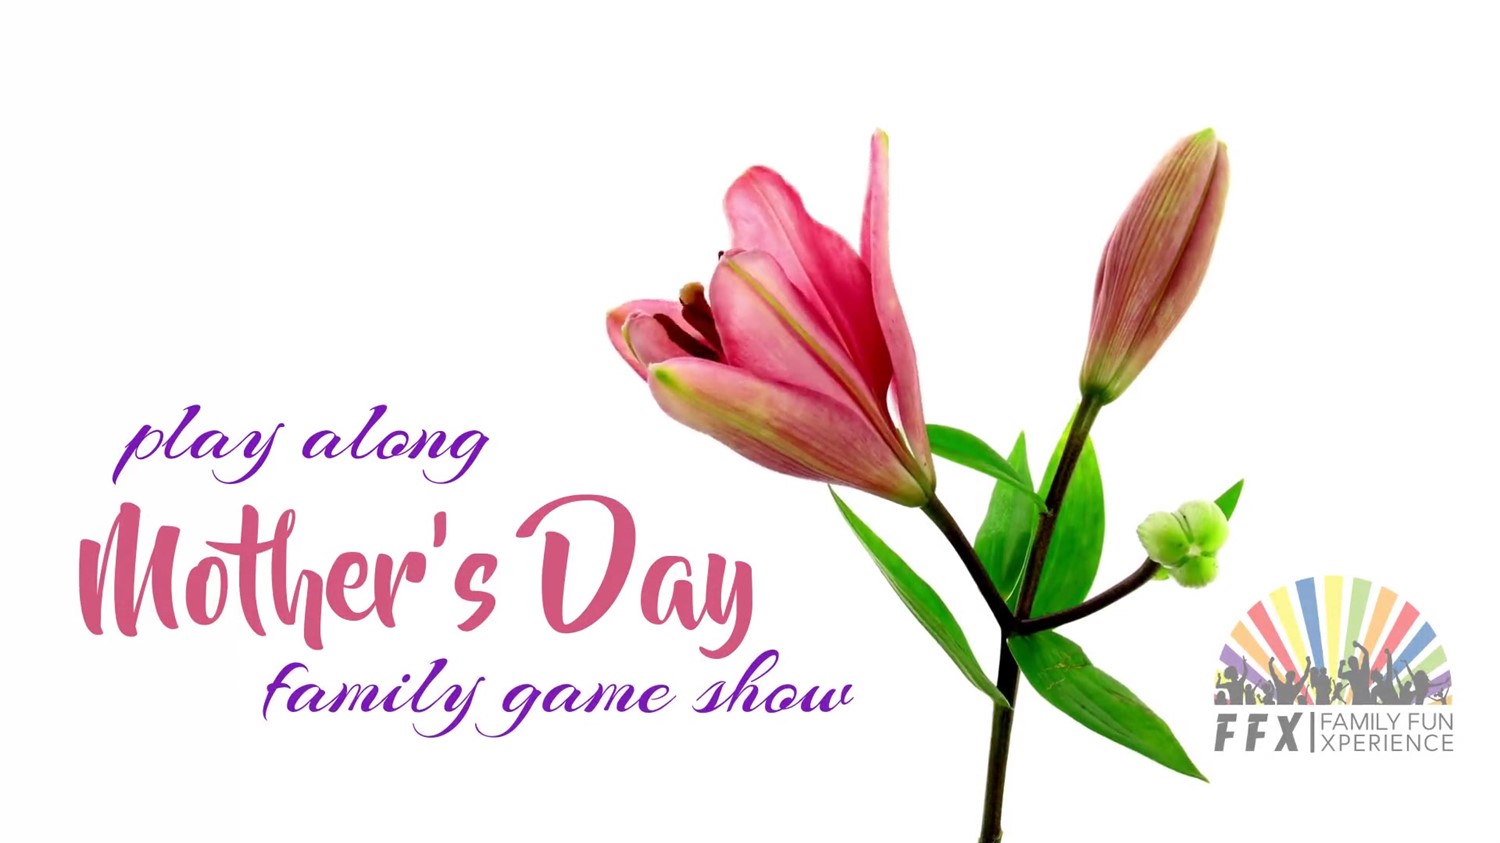 Mom's Day Family Game Show  on may. 11, 19:00@FFX Theatre - Elegir asientoCompra entradas y obtén información enFamily Fun Xperience tickets.ffxshow.org